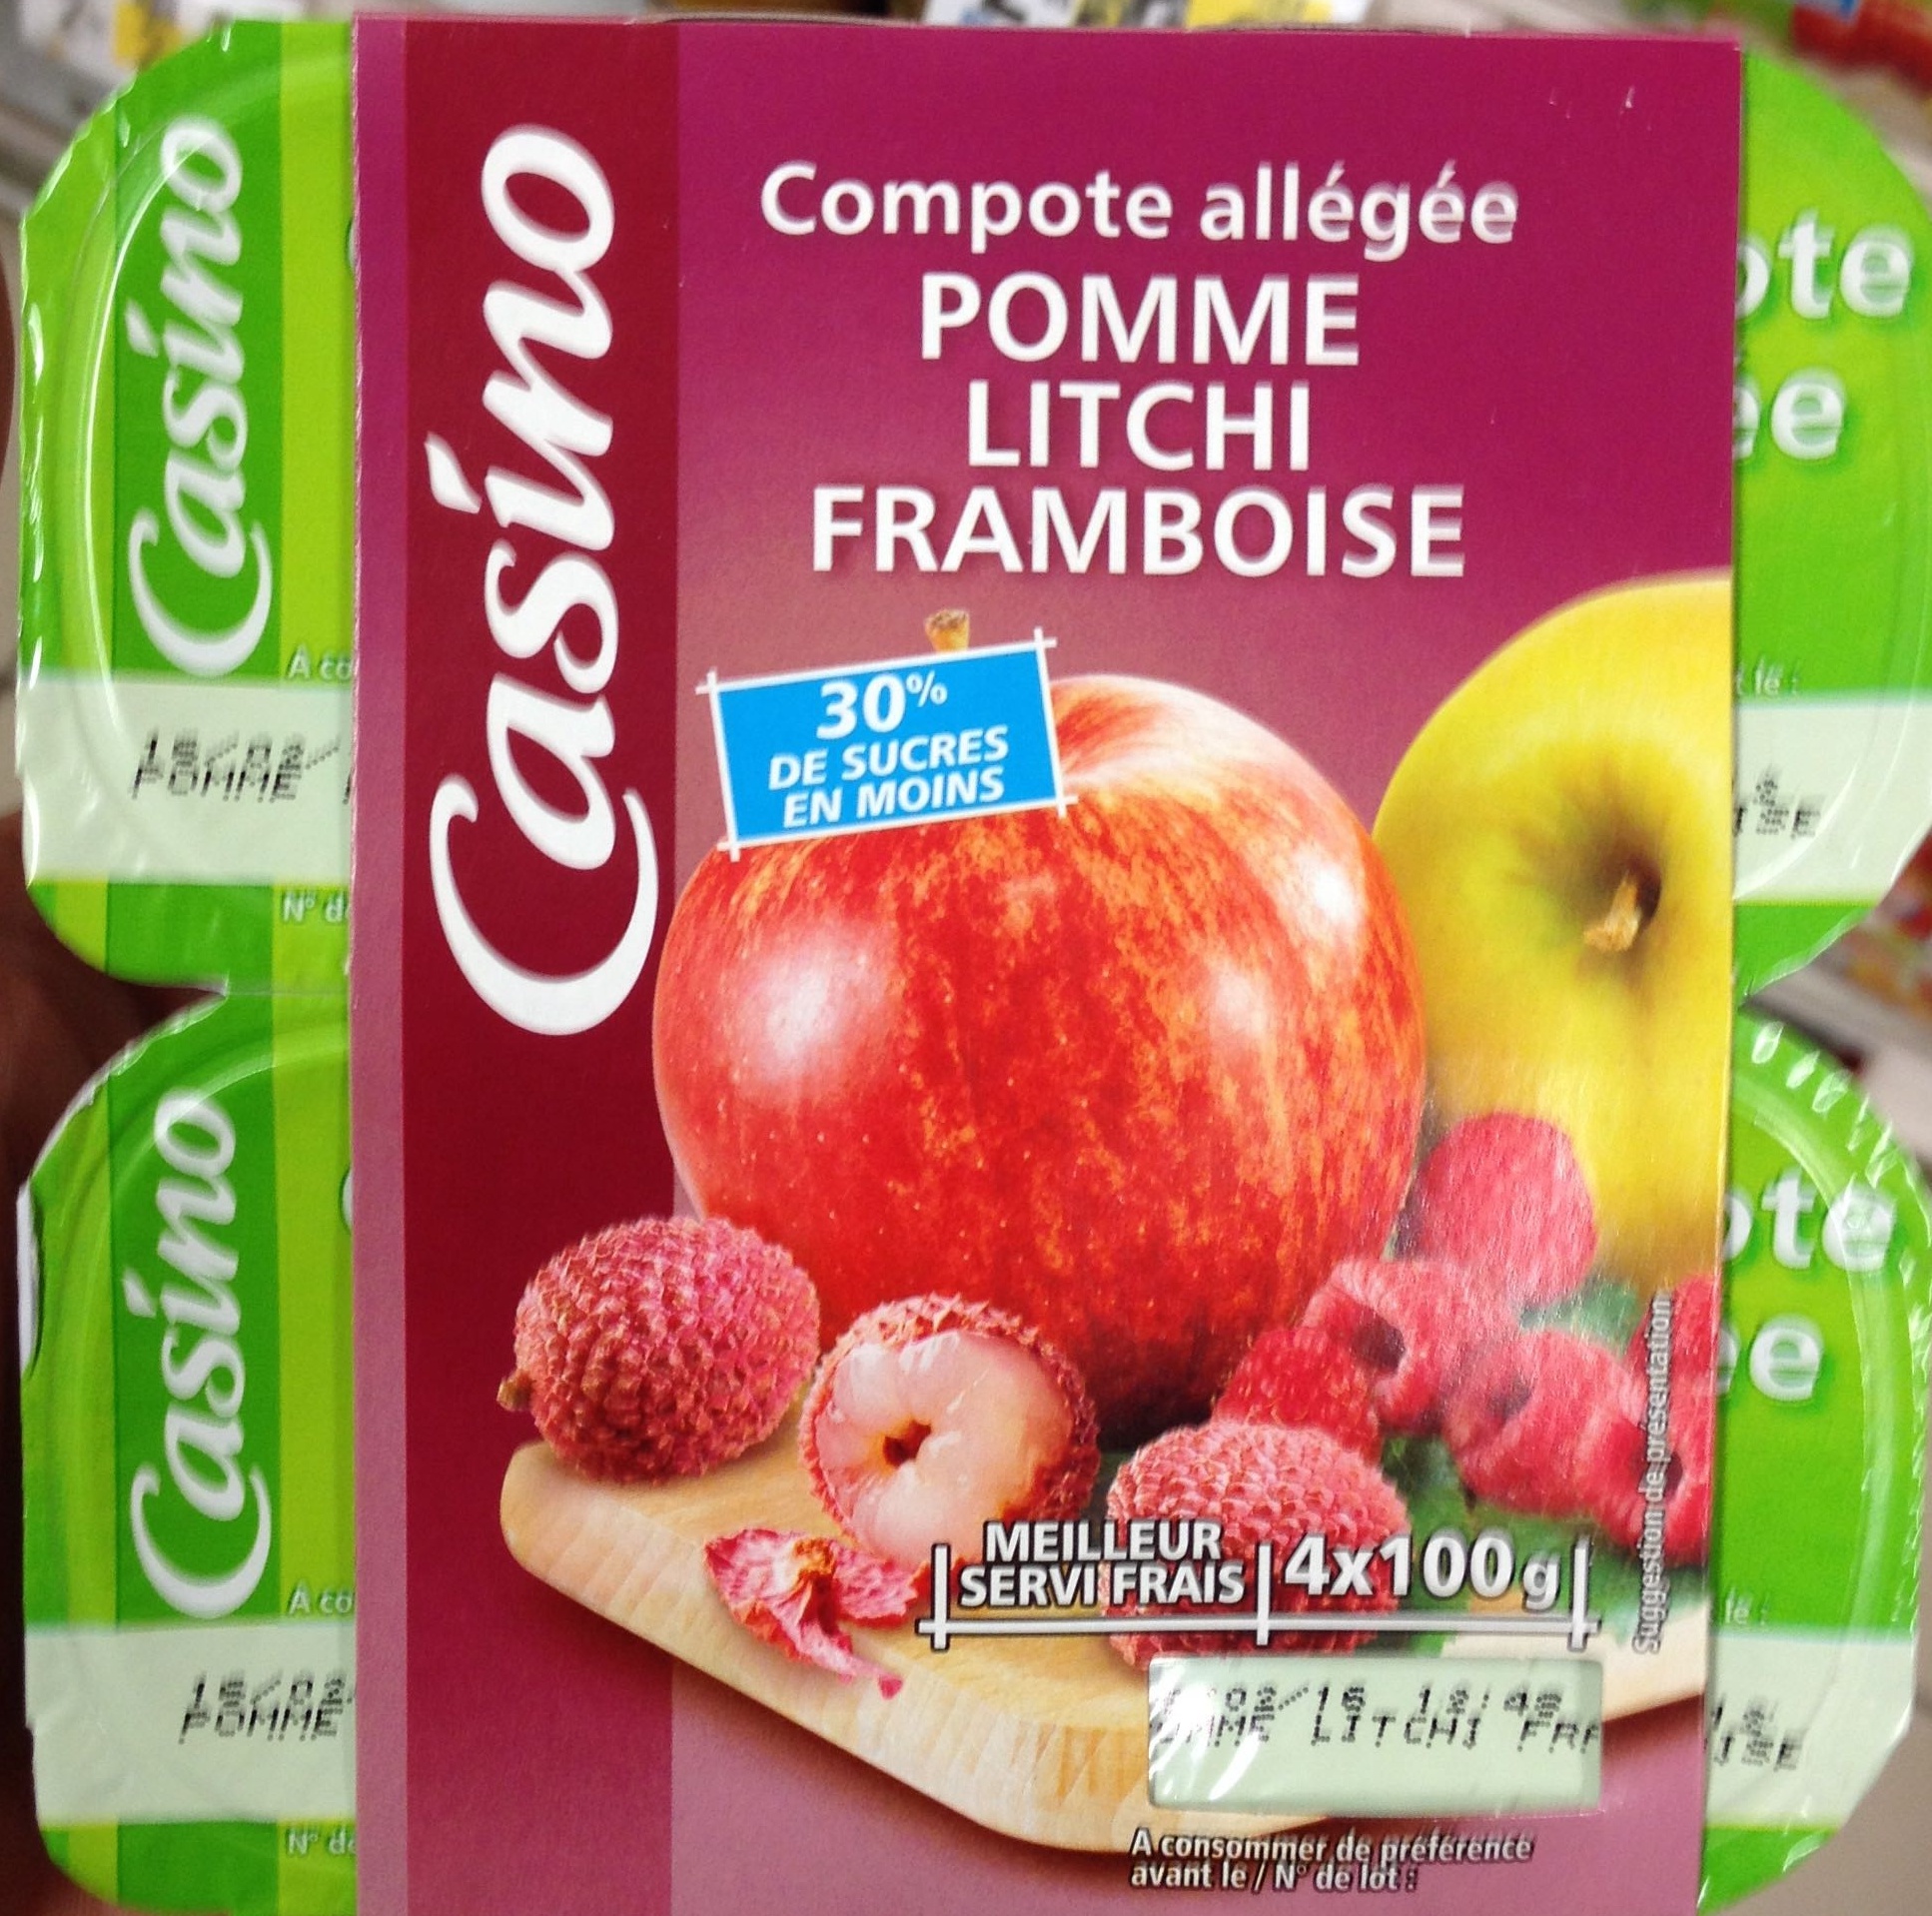 Compote allégée Pommes Litchis Framboises - Product - fr